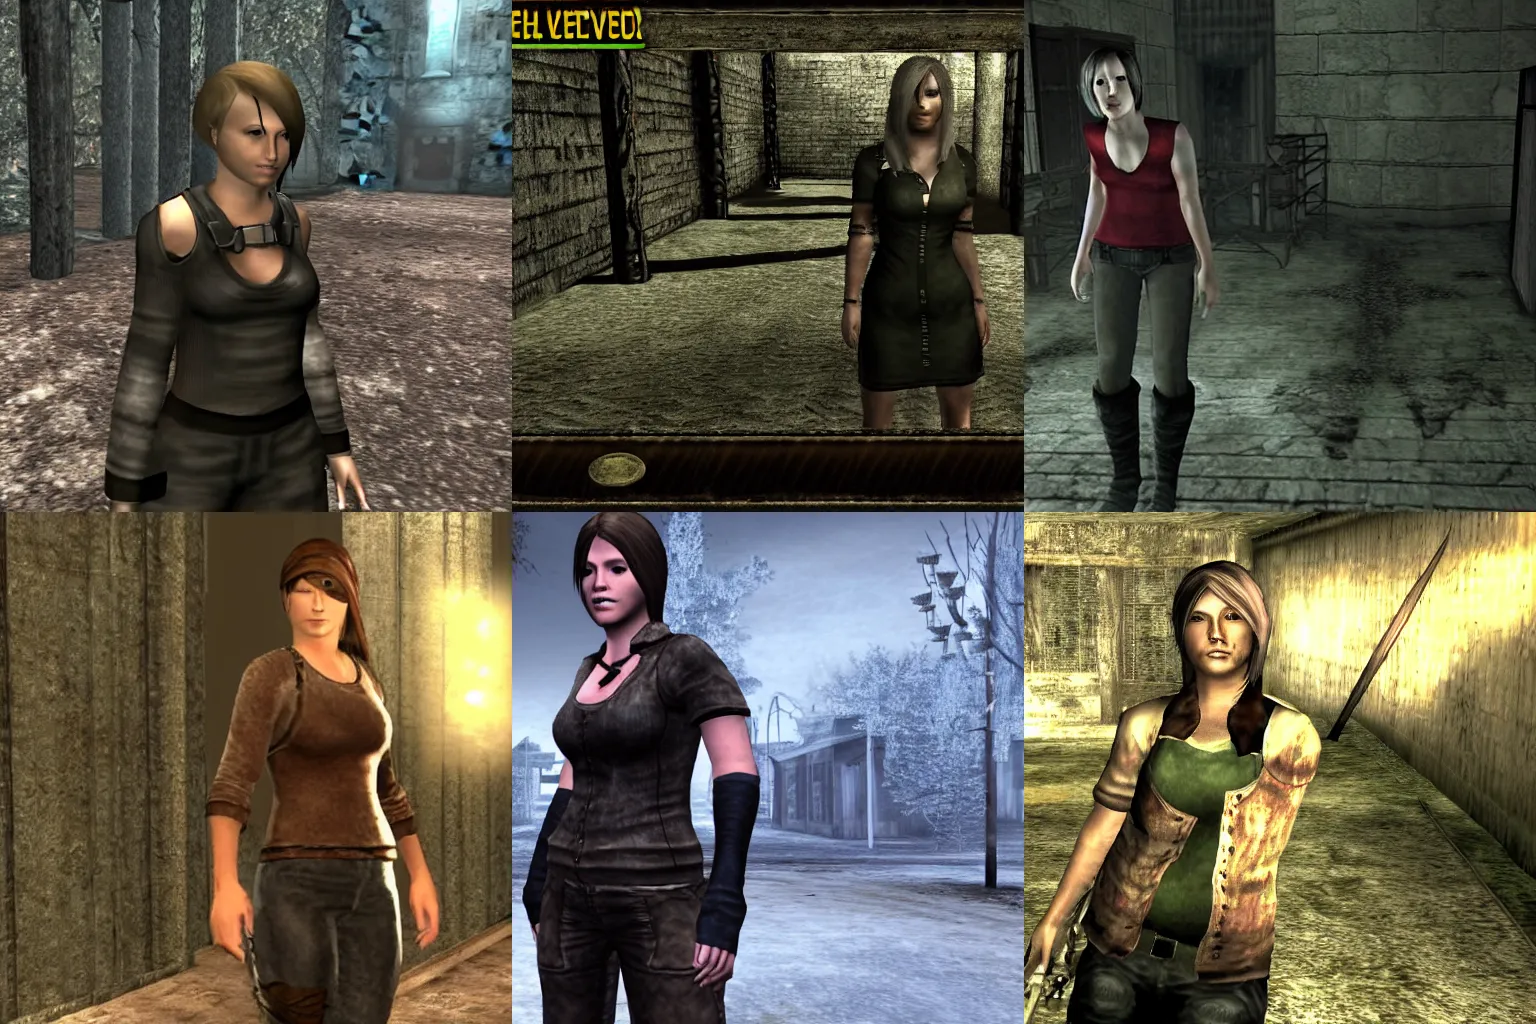 Prompt: Screenshot of Kari Jobe in the game Resident Evil 4